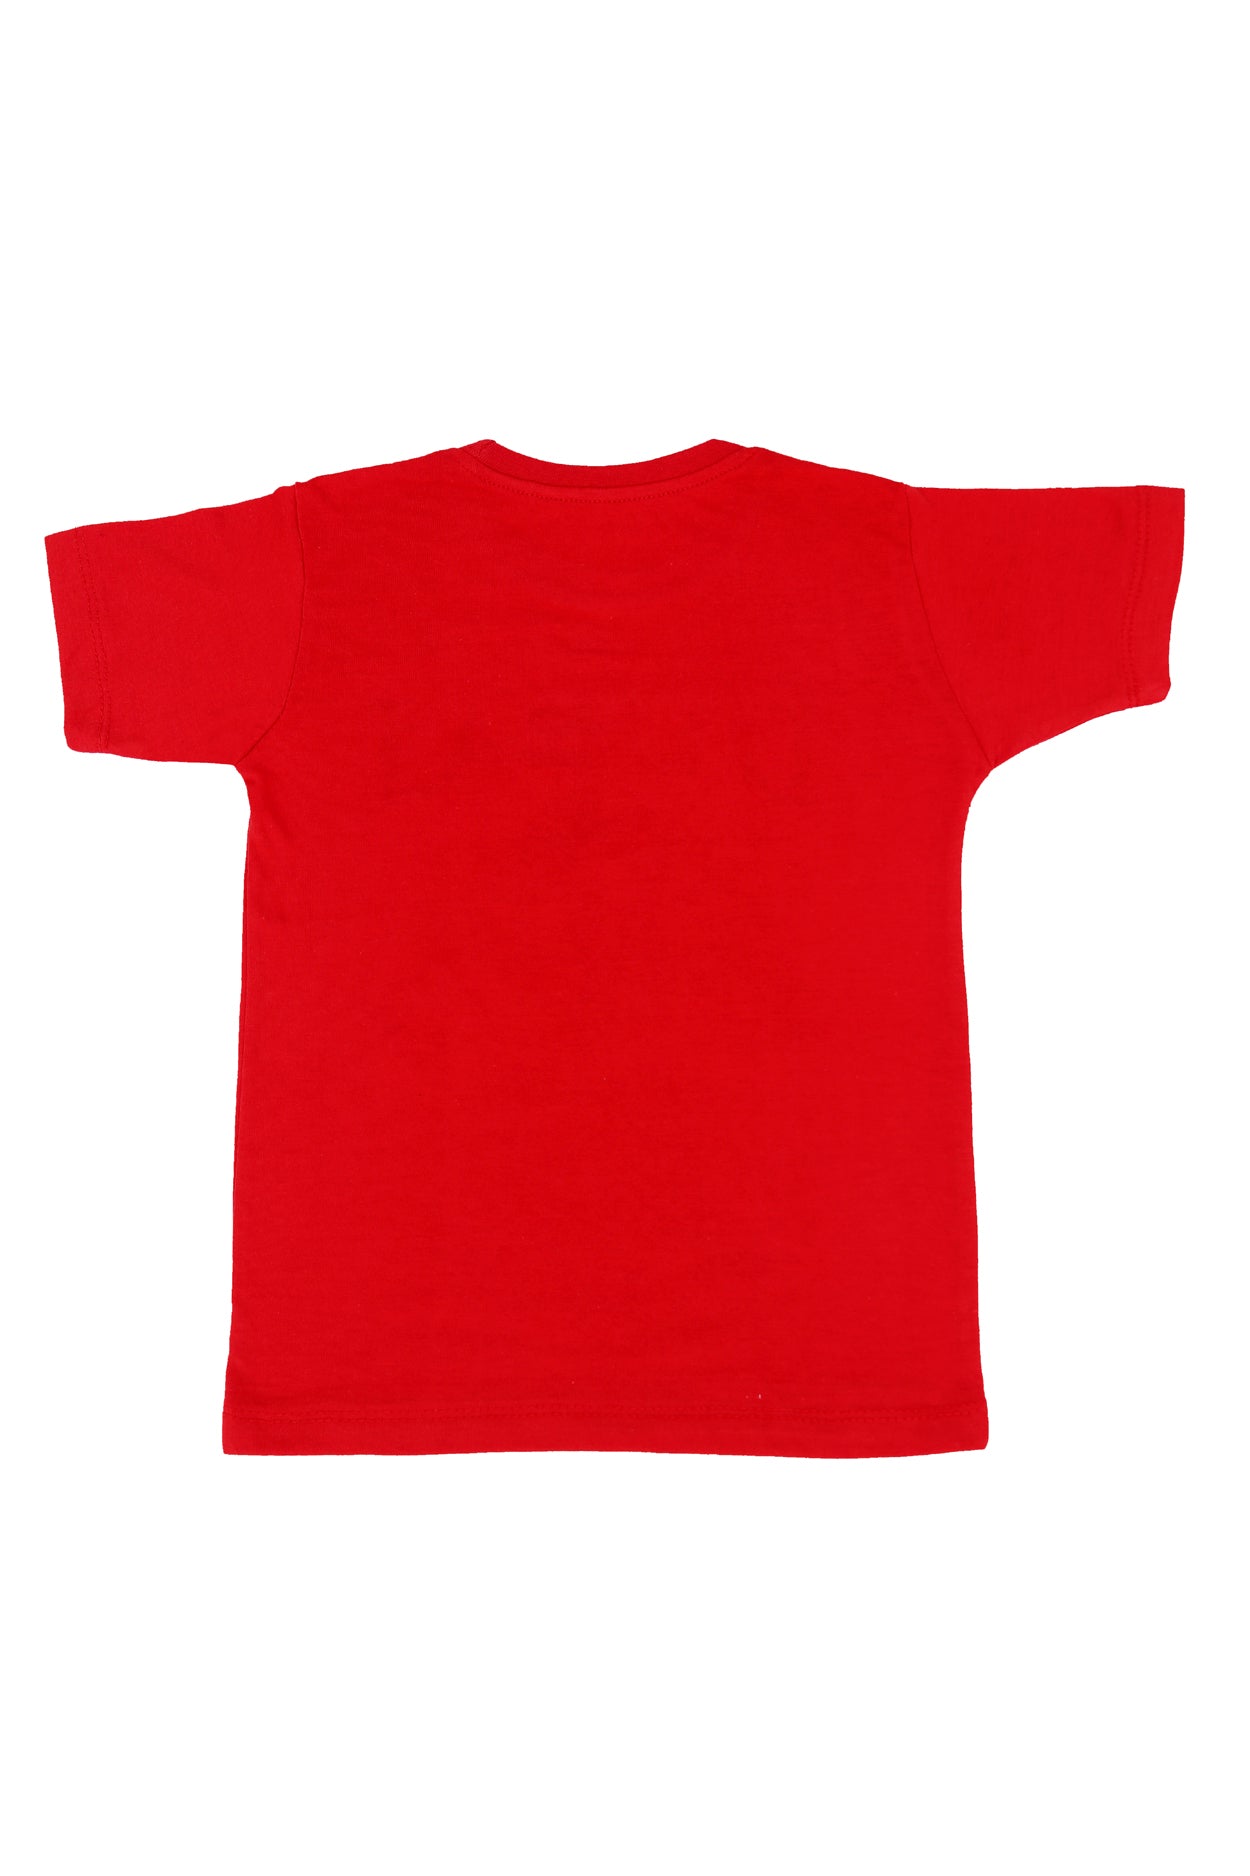 Kids T-Shirt (D-190)